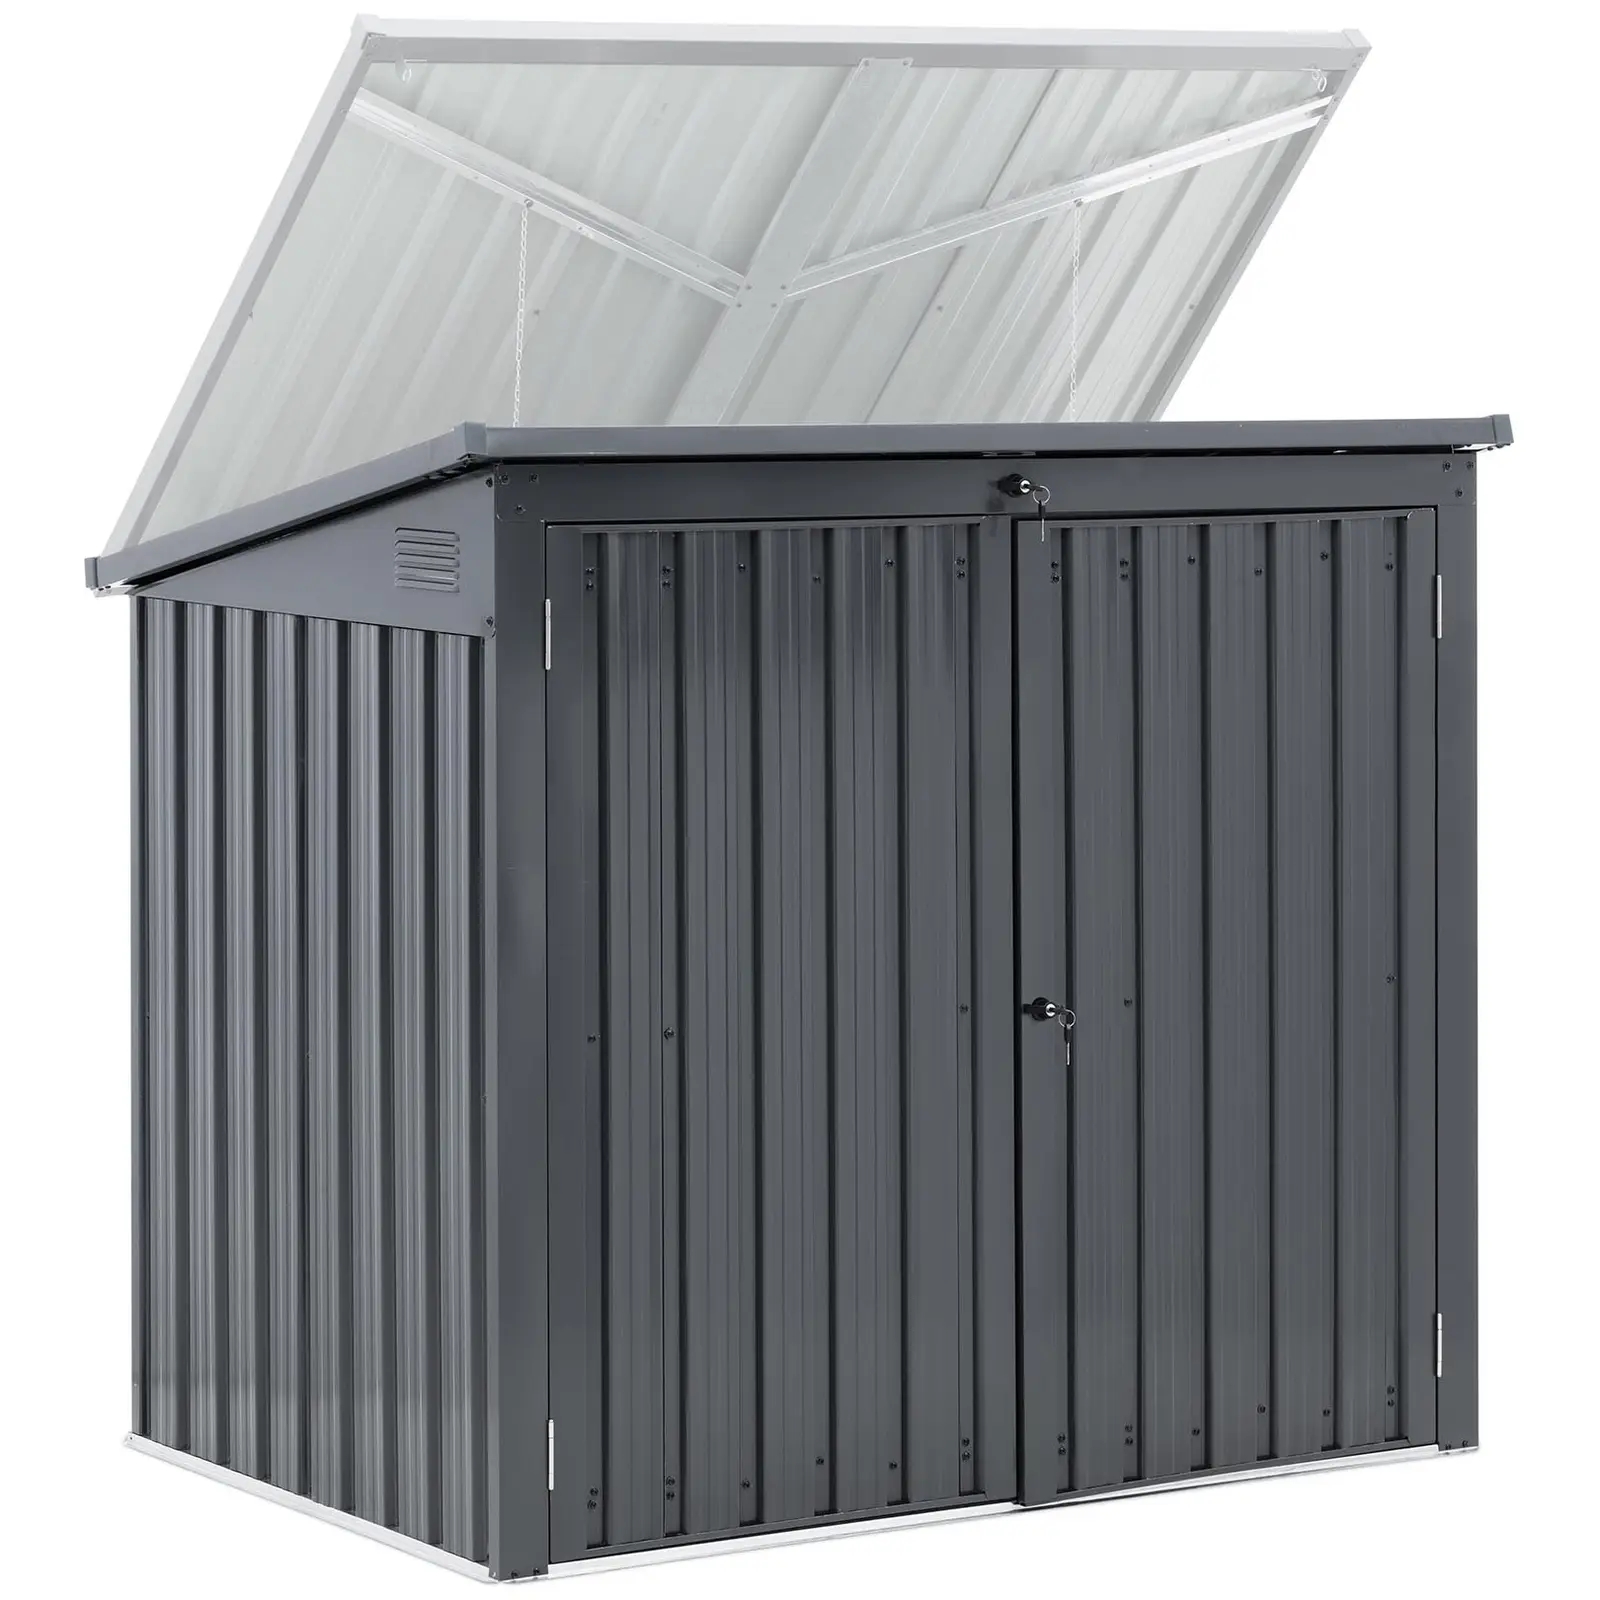 Metal dustbin box - 2 bins (240 L) - lockable